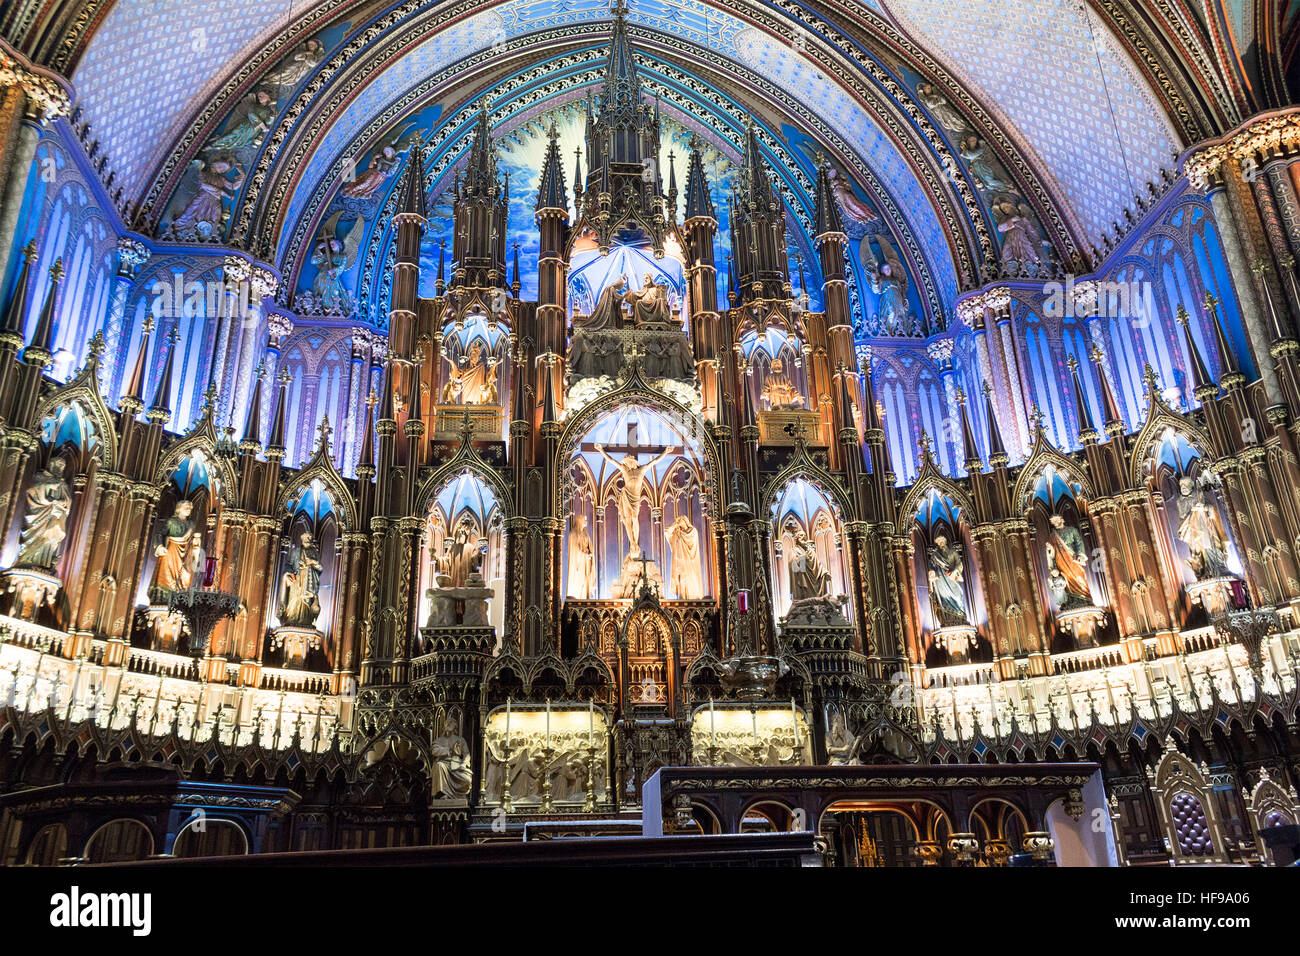 Vorderen Altar Notre Dame Basilika Montreal, Quebec Kanada eine gotische Architektur Kathedrale eine der größten Touristenattraktionen & Destinationen Montreals. Stockfoto